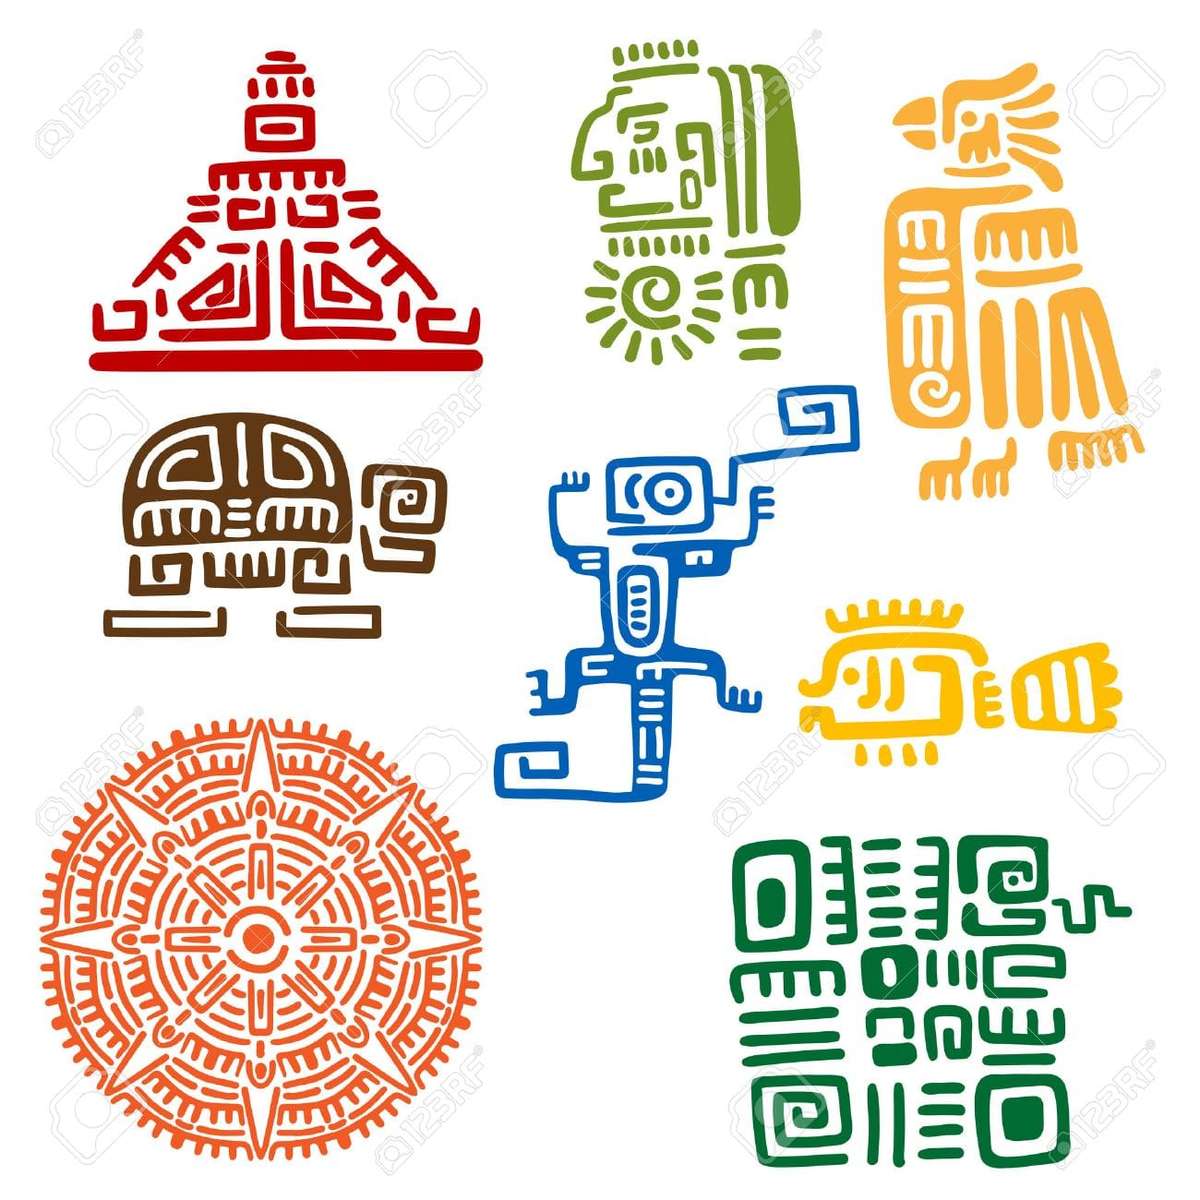 Inkové, Aztékové a Mayové skládačky online